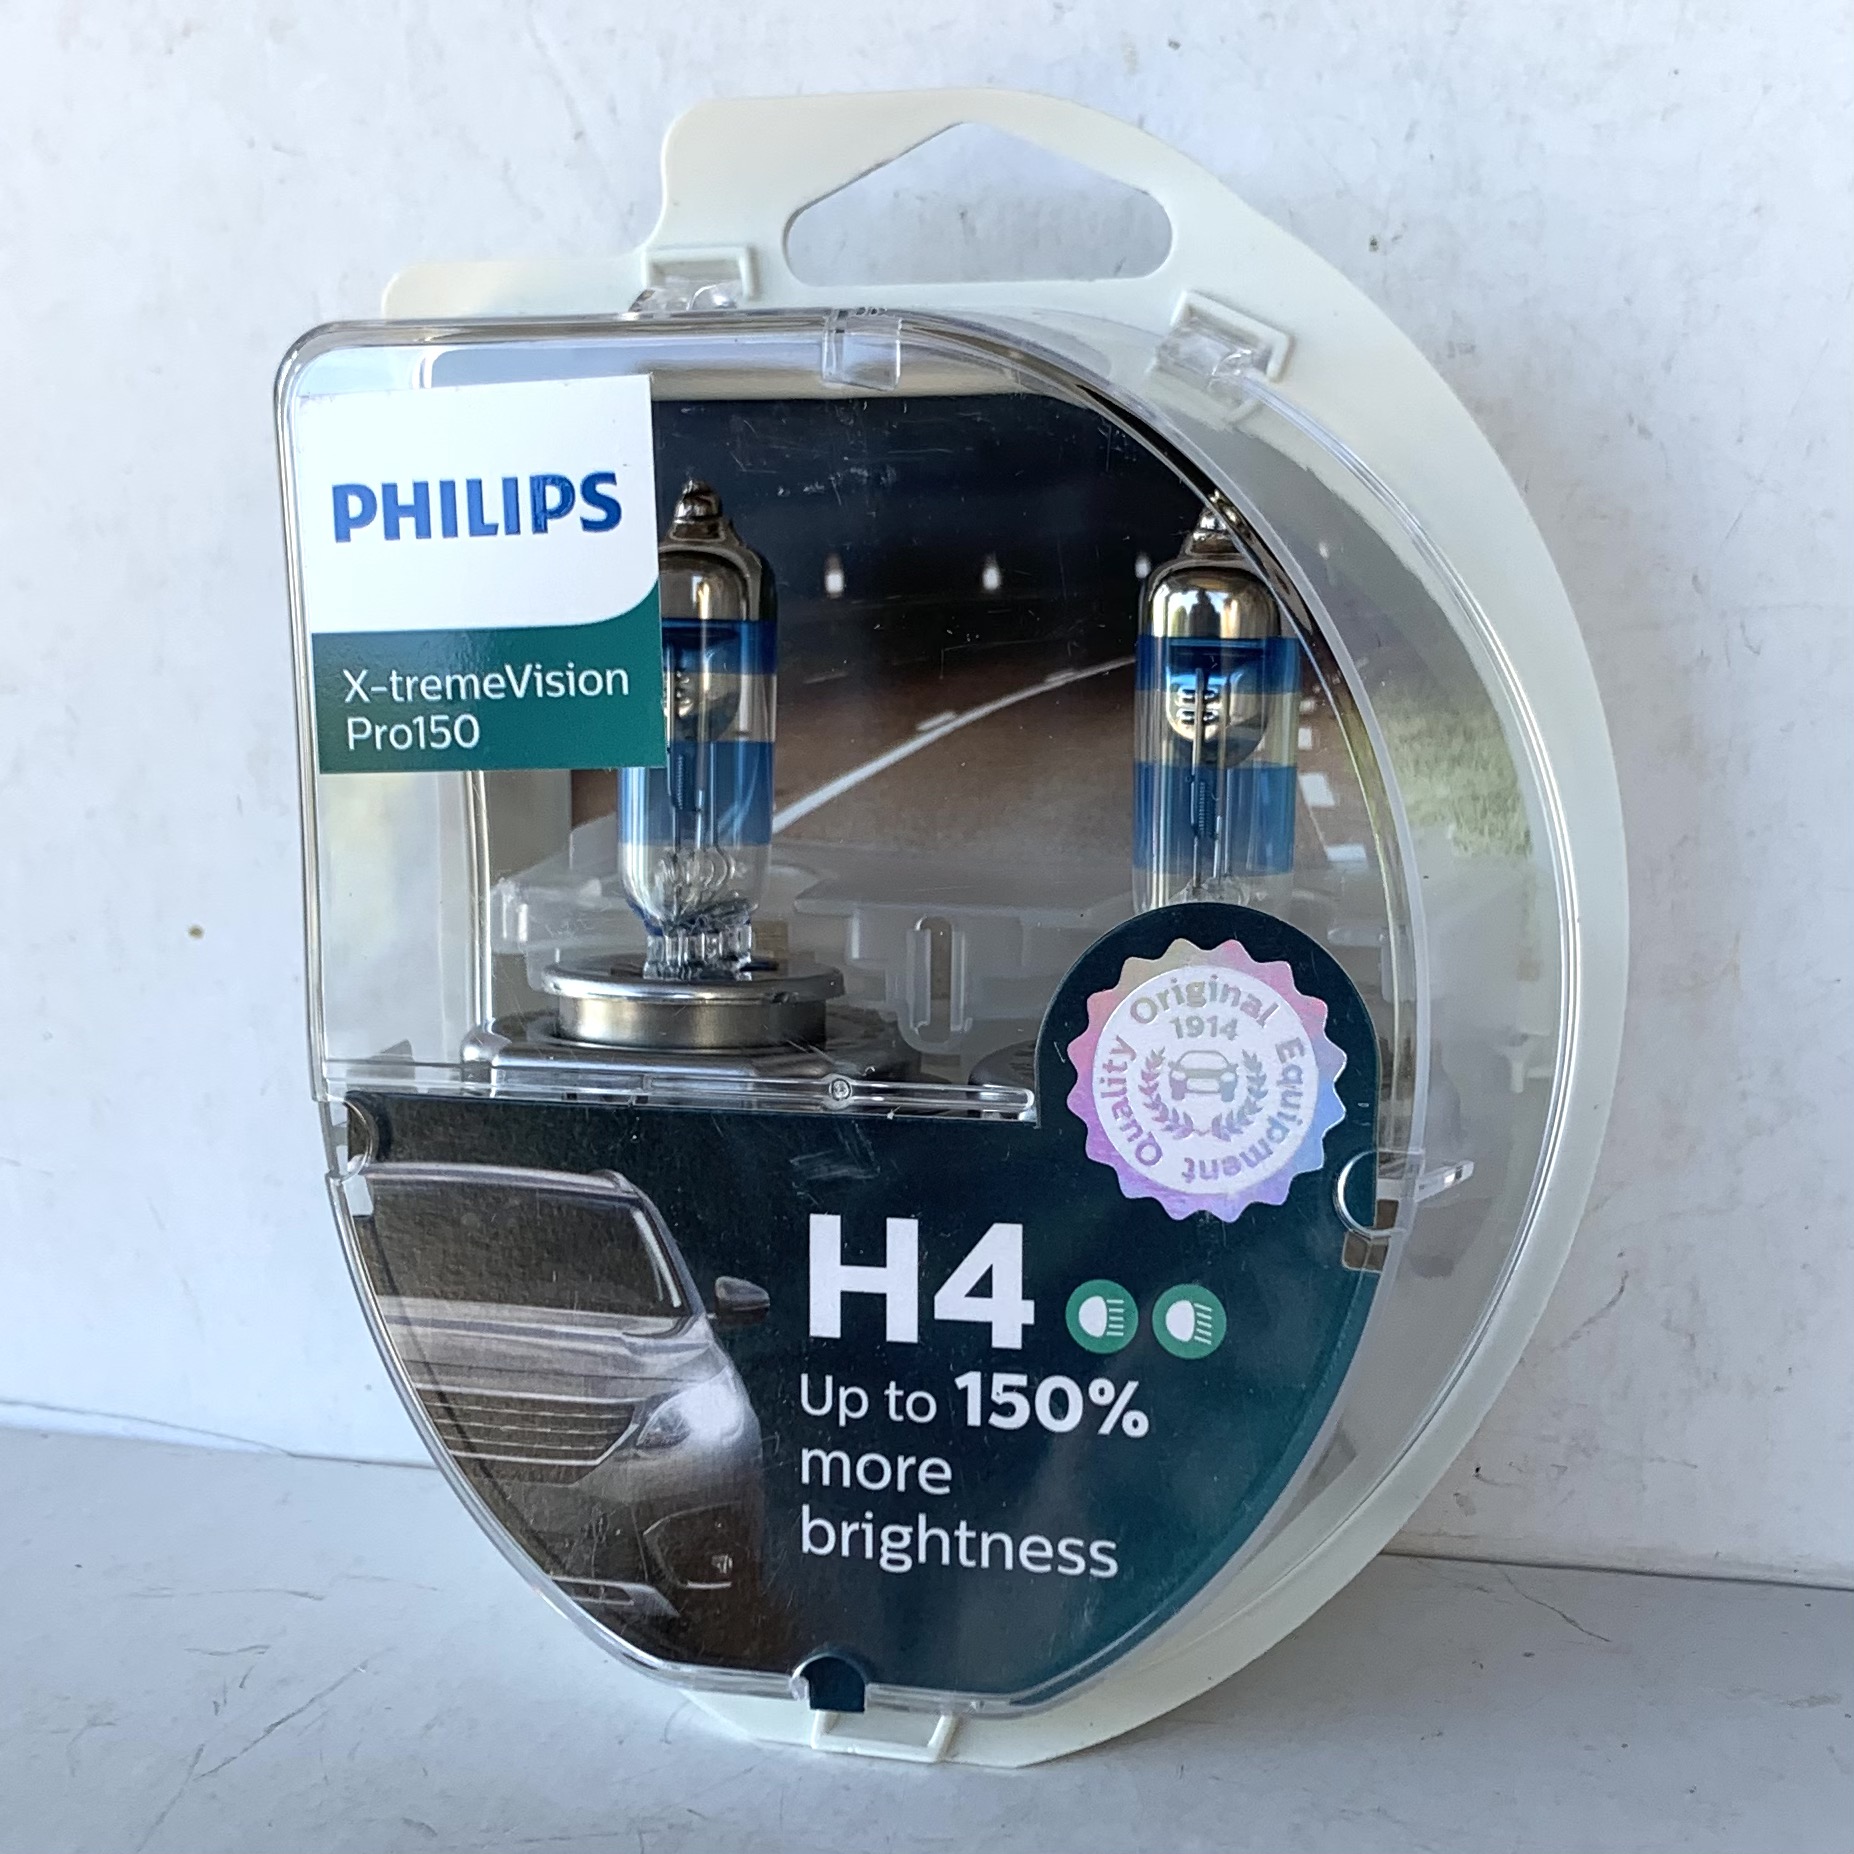 Филипс 150. Philips x-TREMEVISION pro150. Philips x-TREMEVISION pro150 h7. H4 Philips x-treme Vision Pro 150 12342 xvps2 свет фар. Philips h7 +150.